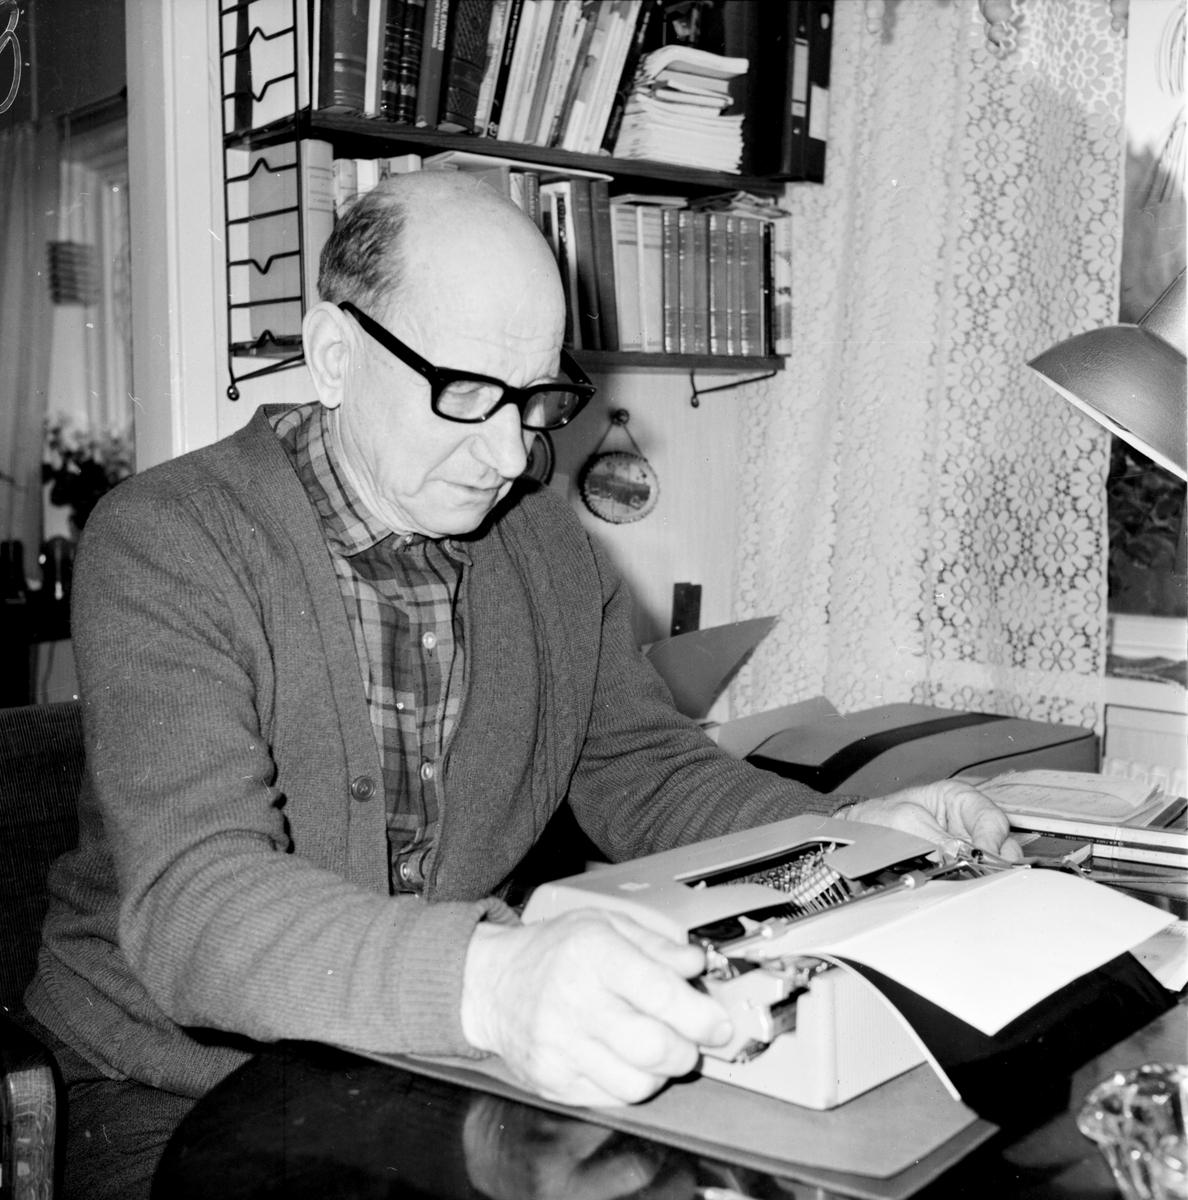 Nordsjö,
Johan Söderman,
Jan 1971